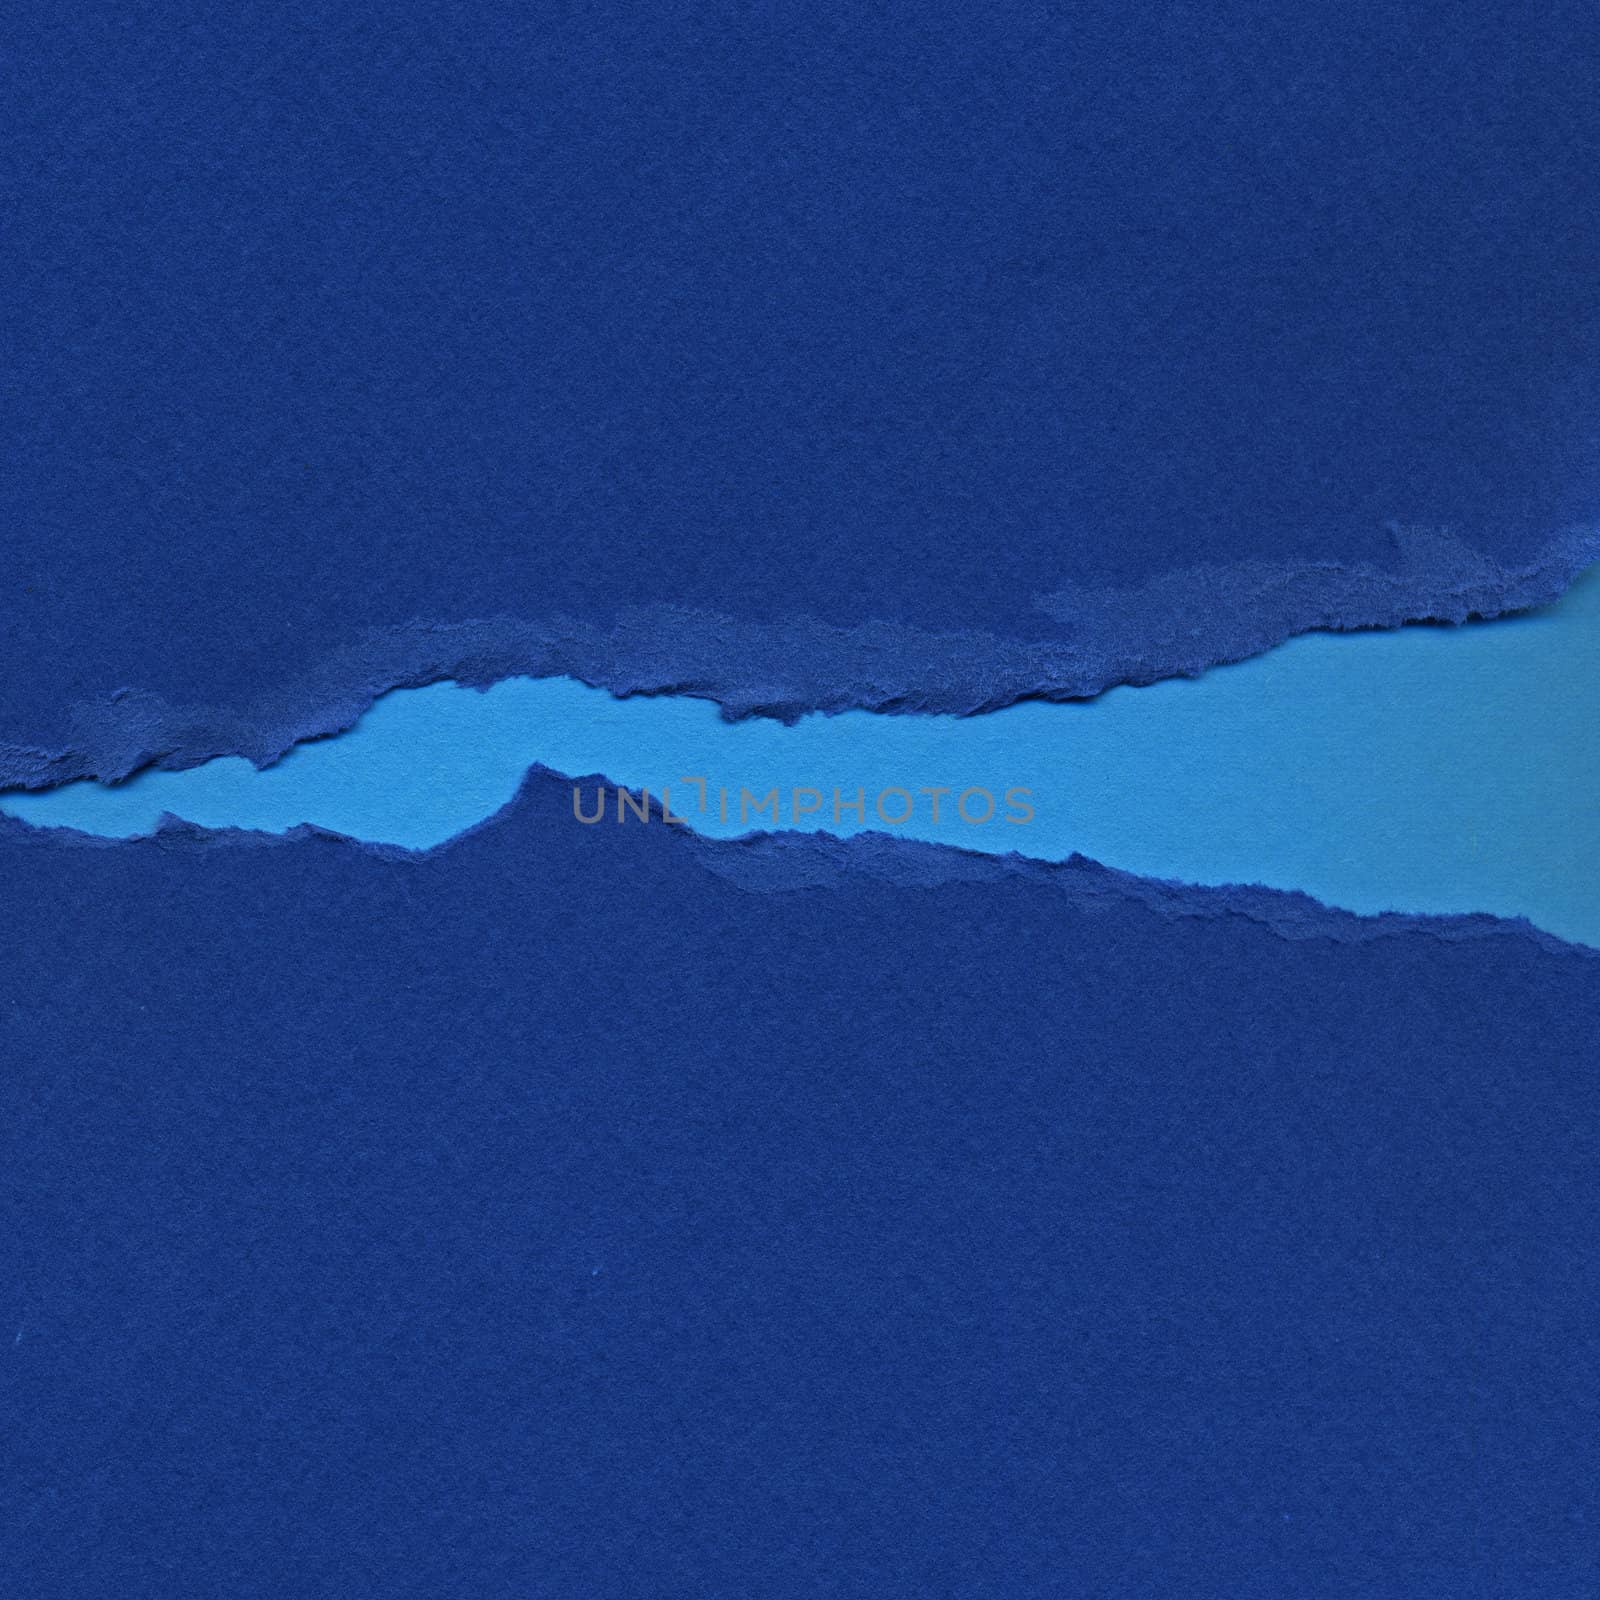 Torn blue paper background resembling flowing river. Grunge design element.